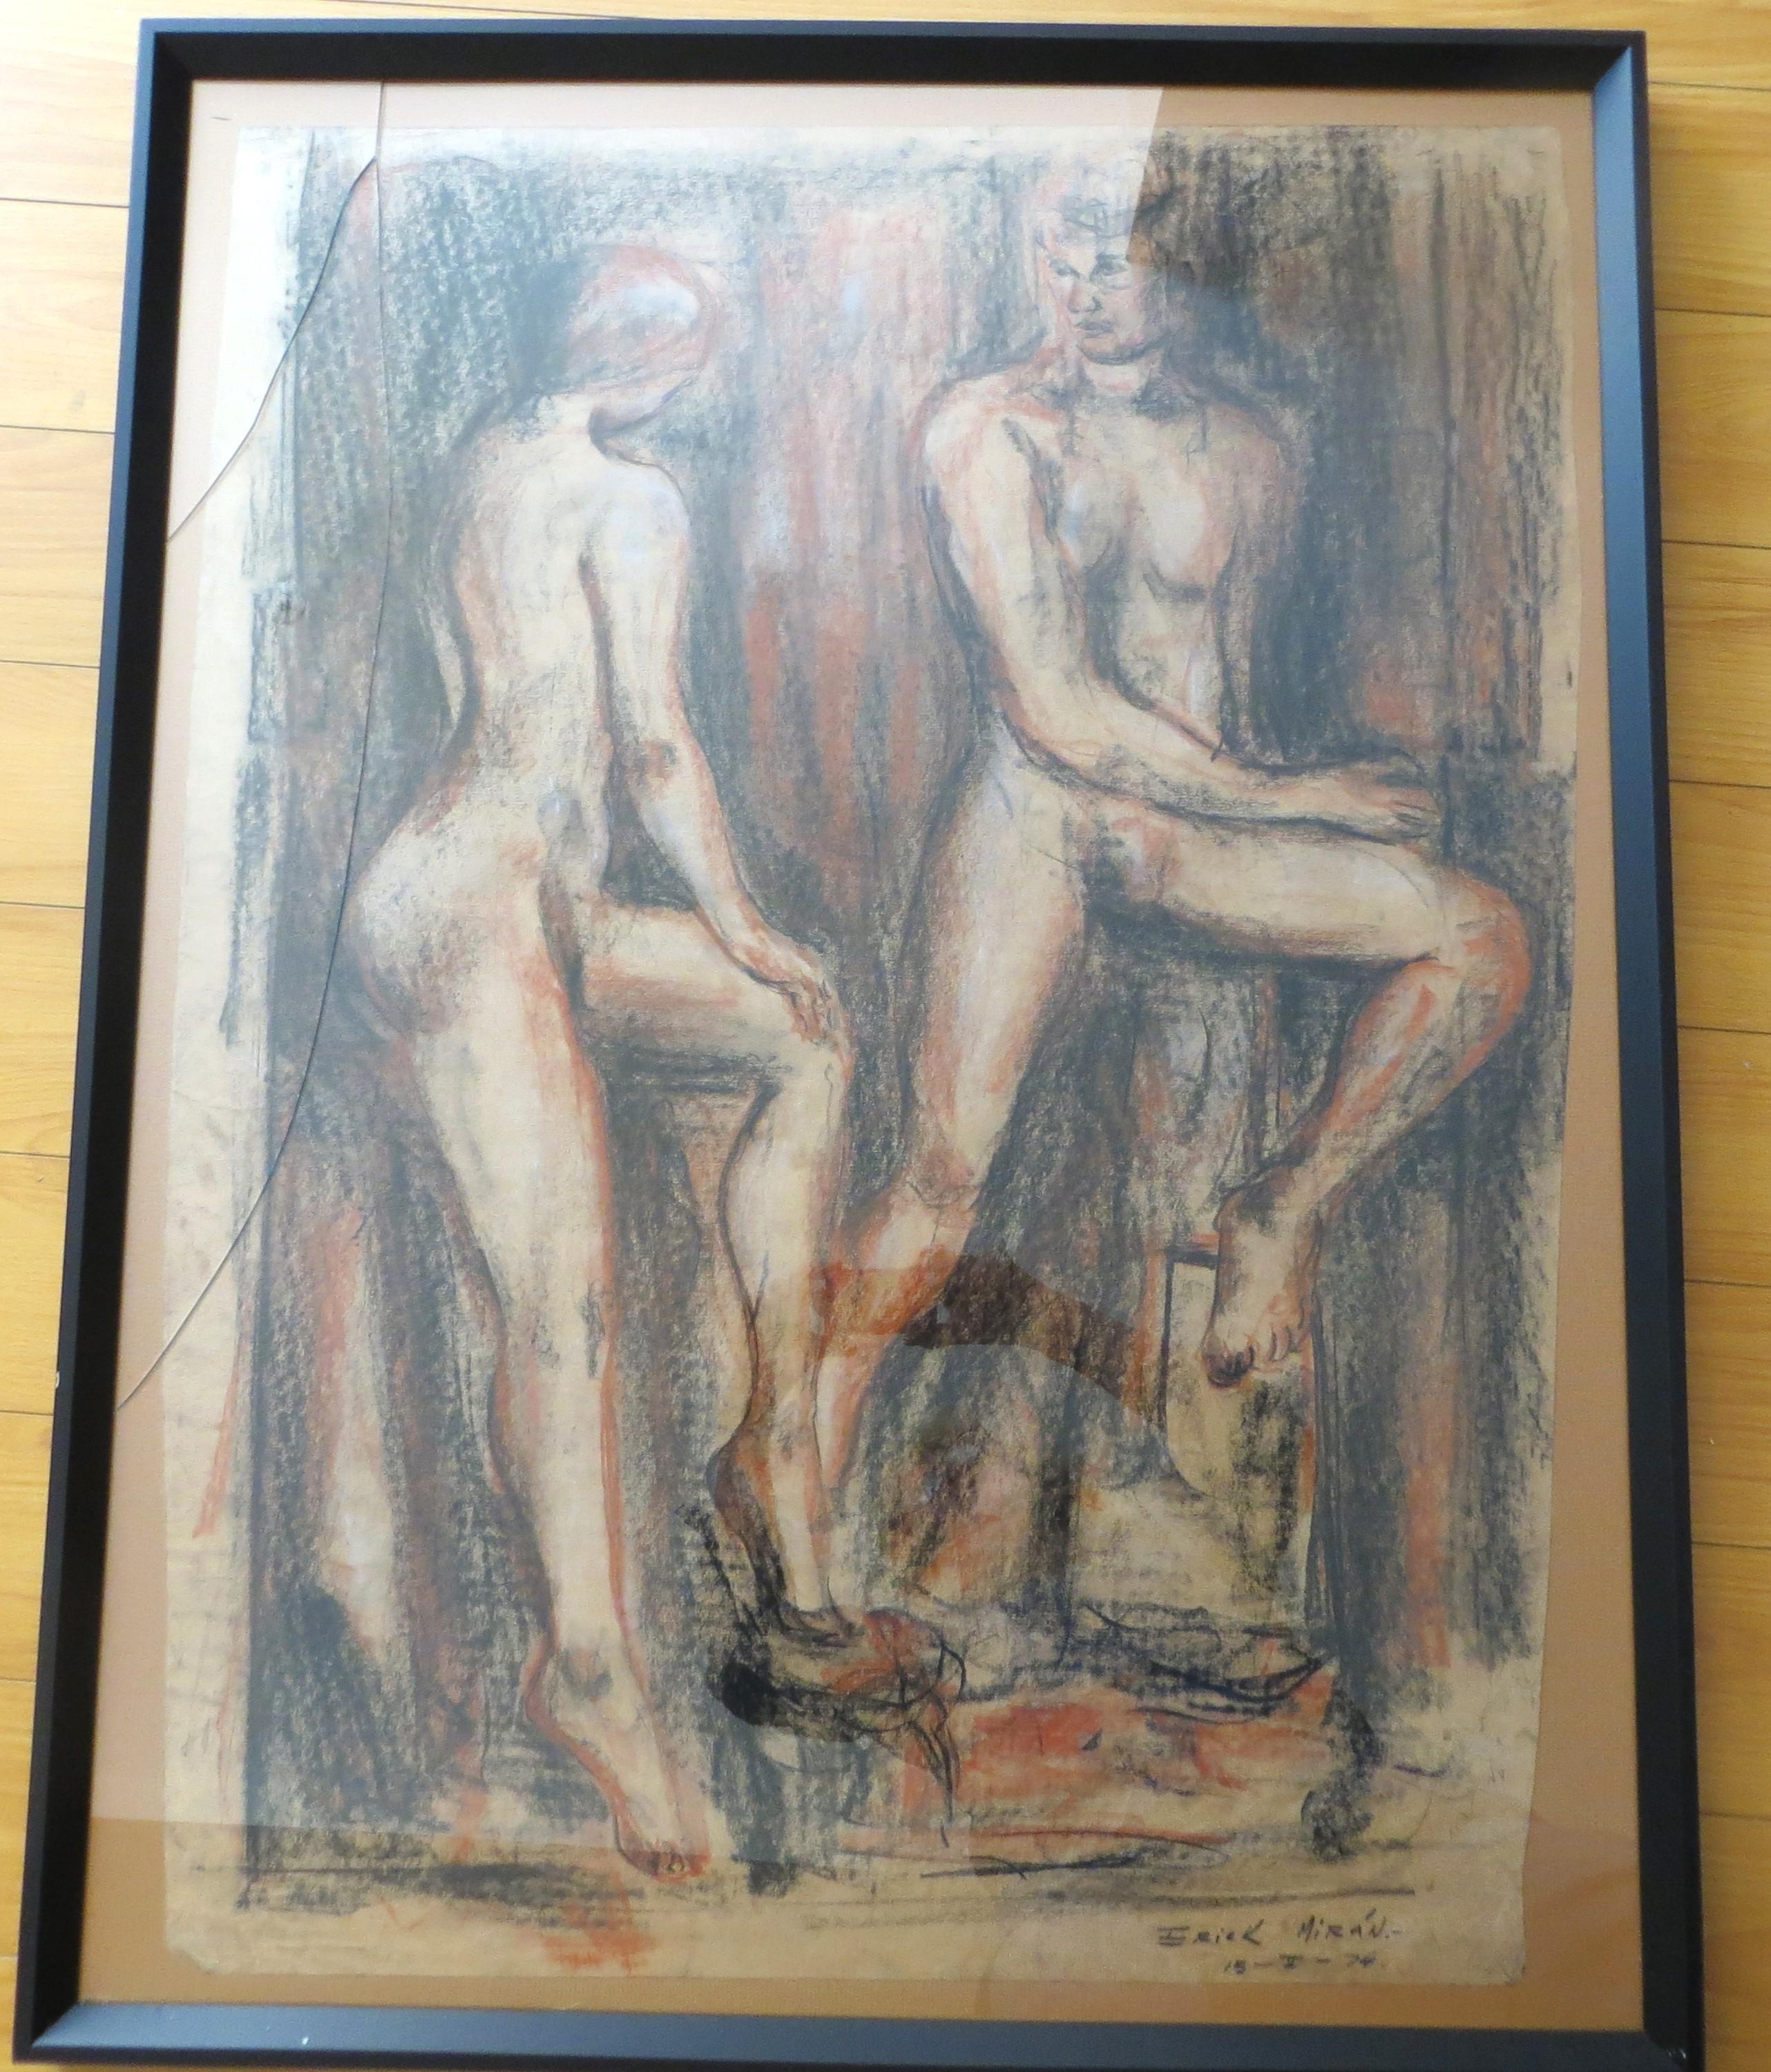 Paar nackte Paar, pastellfarbene Zeichnung, signiert Erik Miran 1976 – Art von Unknown